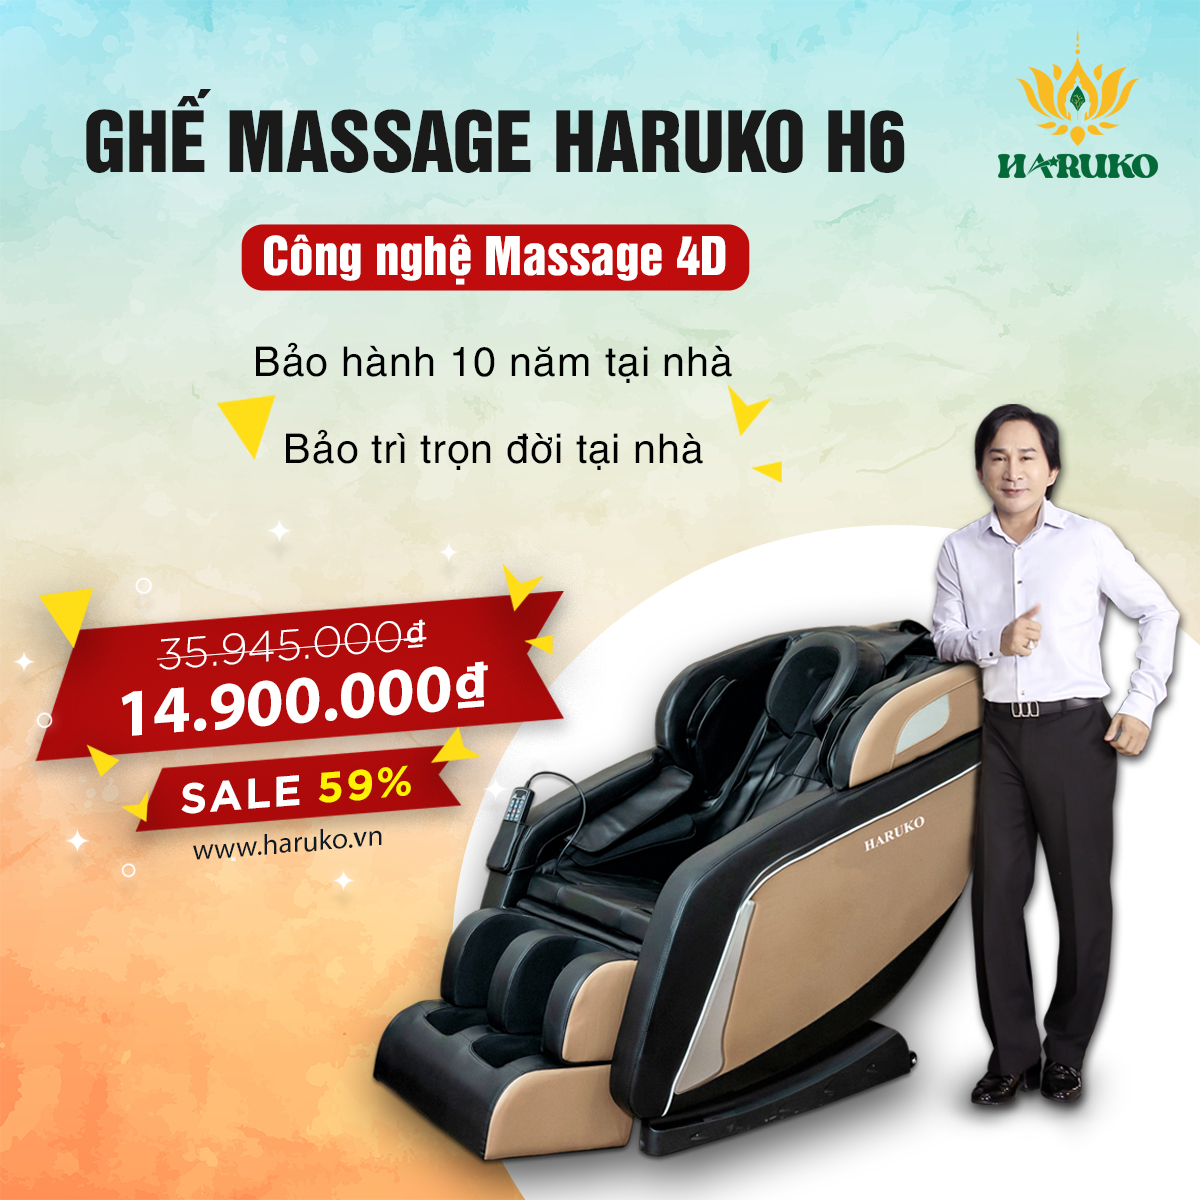 Haruko-H6 là sản phẩm ghế massage giá rẻ được trang bị đầy đủ những tính năng cơ bản và mô phỏng thao tác của bàn tay người